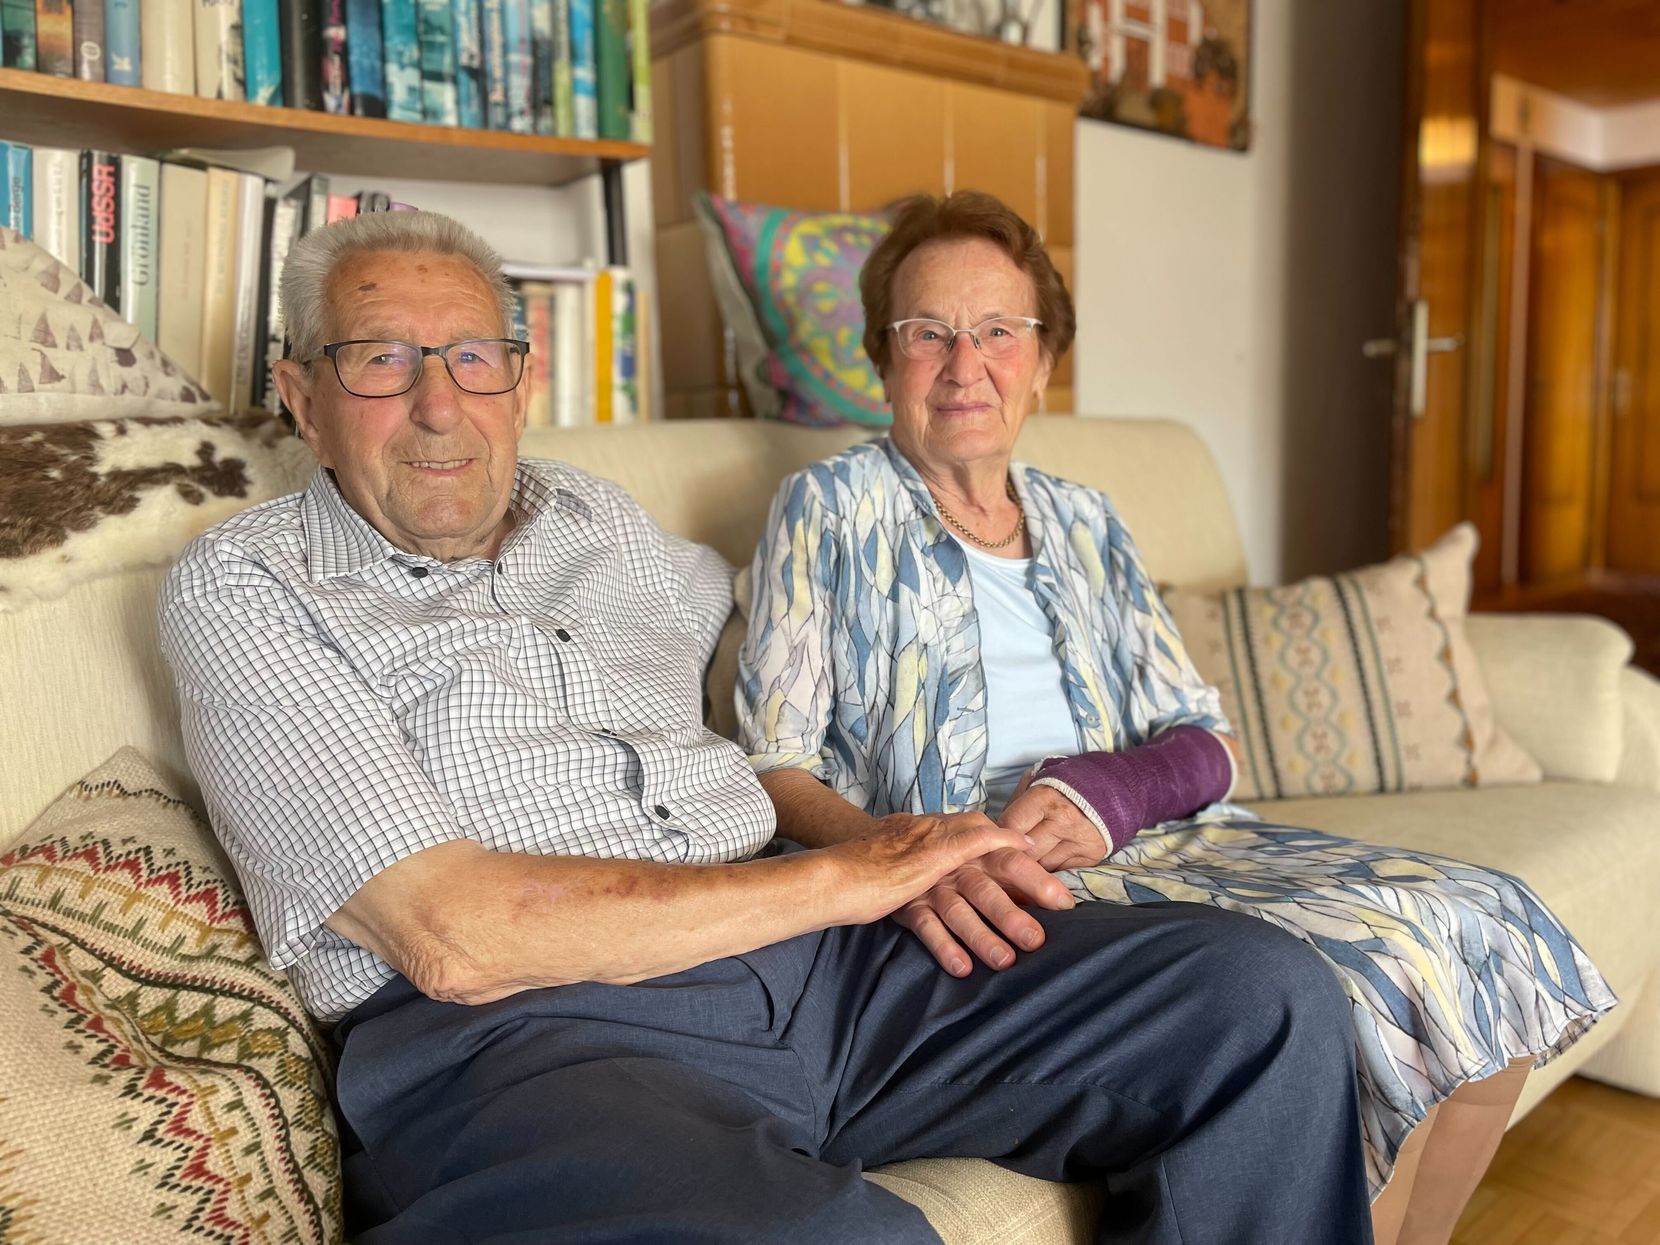 Älteres Ehepaar sitzt auf einem Sofa und schaut in die Kamera, die Frau hat einen Arm im Gips.